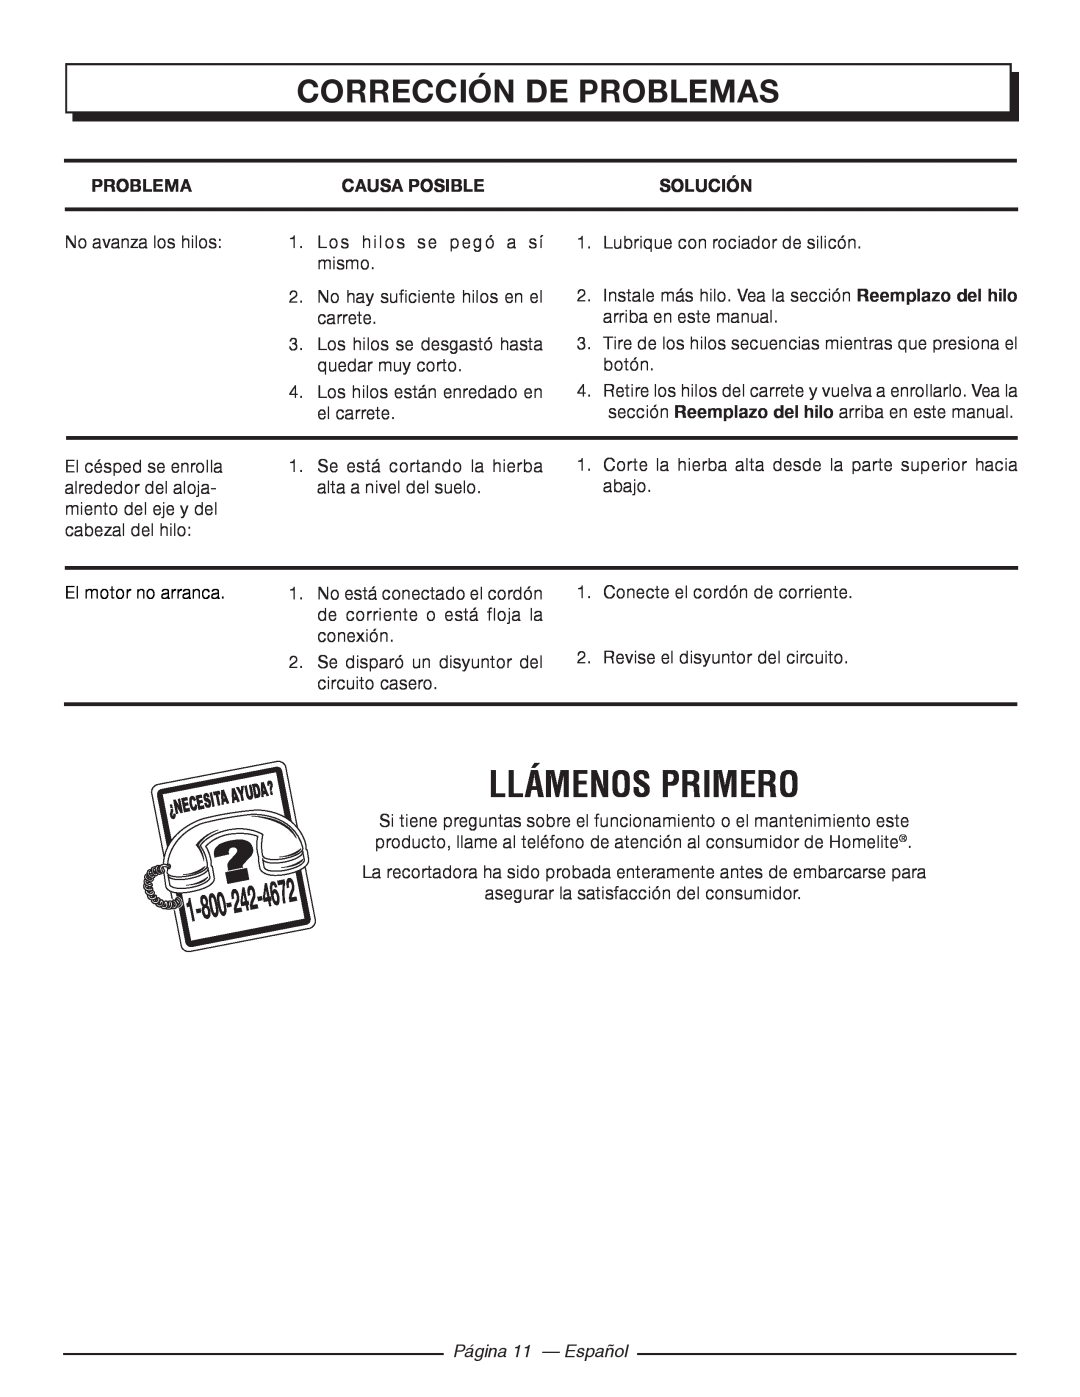 Homelite UT41120 Llámenos Primero, Corrección De Problemas, Causa Posible, Solución, 4672, Página 11 - Español 